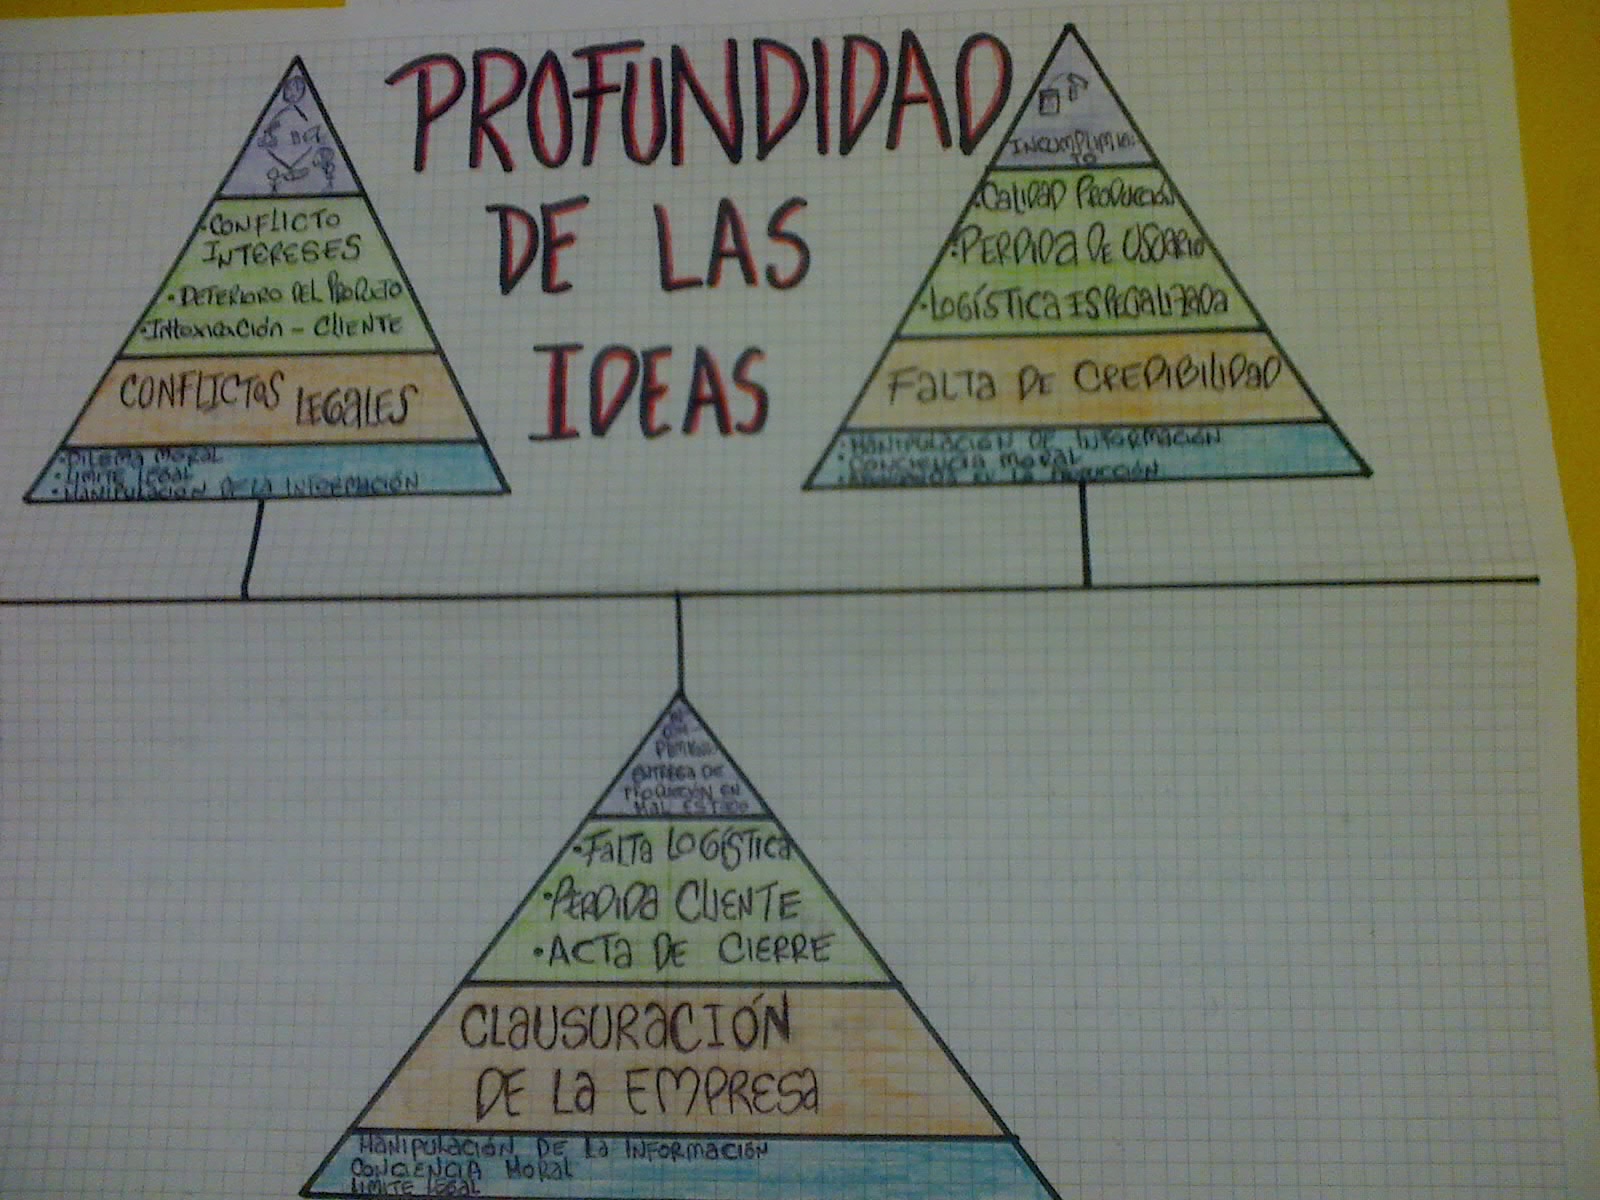 Profundidad_De_Las_Ideas_01_Caso 3_Armando_Cajas